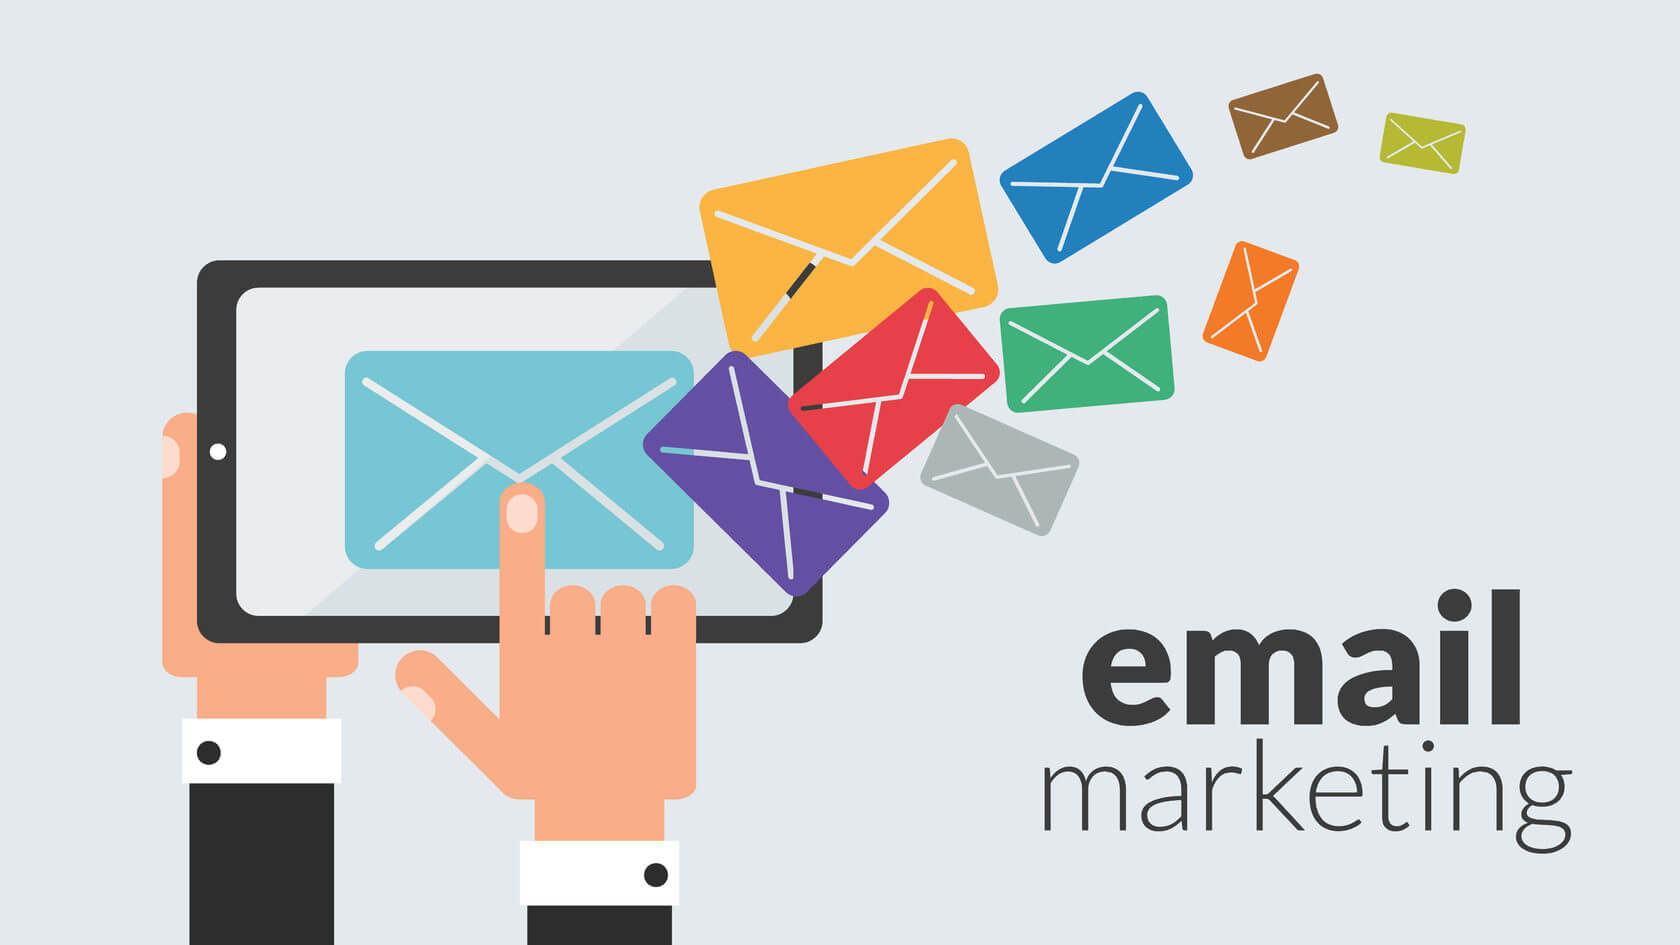 Email-маркетинг — это еще один инструмент цифрового-маркетинга, основанный на использовании электронной почты для отправки коммерческих и информационных сообщений и рассылок целевой аудитории